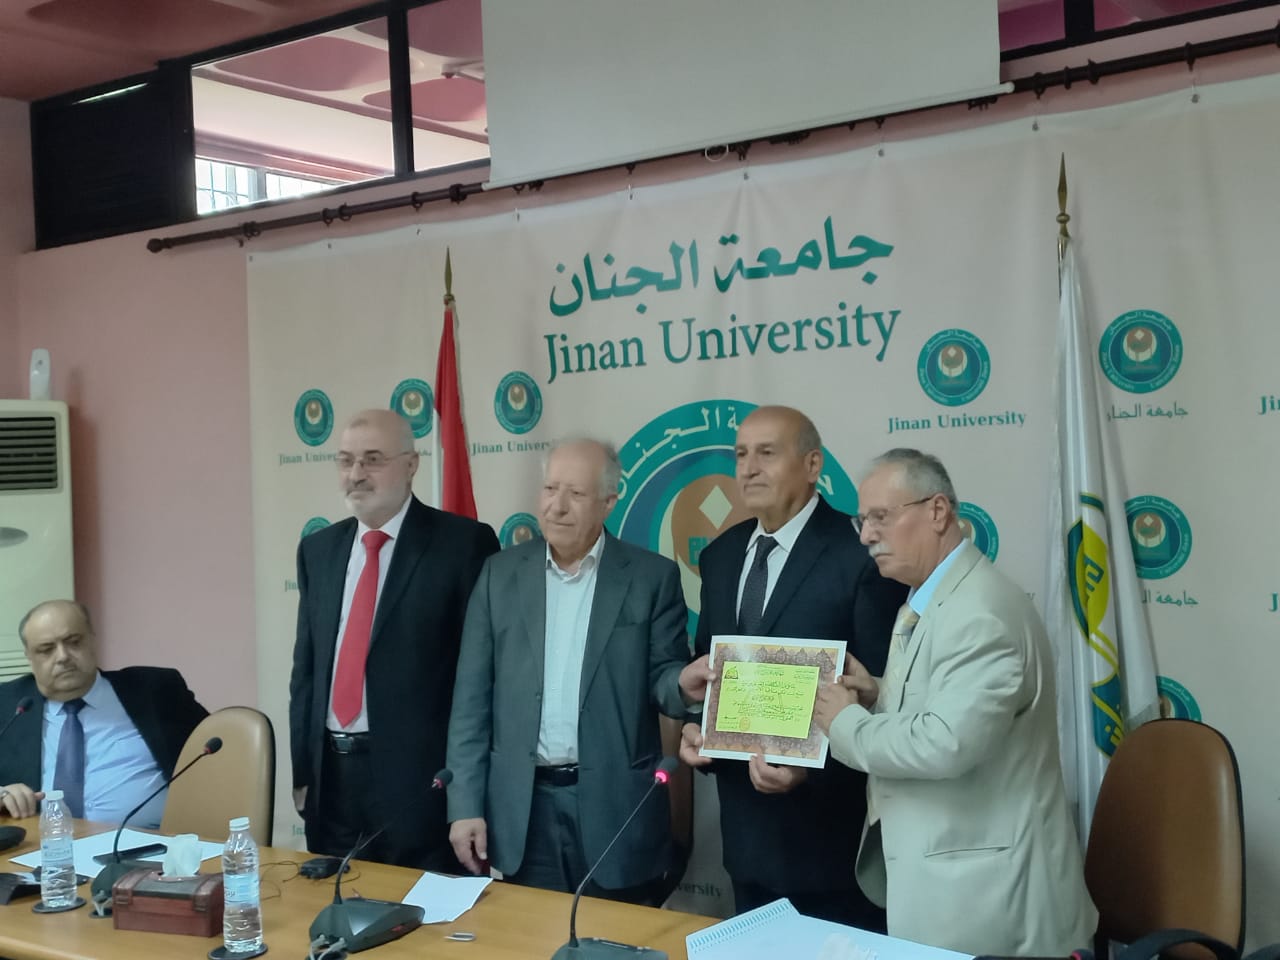 اتحاد المؤرخين العرب – بغداد يمنح شهادة وسام المؤرخ العربي إلى الأشقاء المؤرخين اللبنانيين في جامعة الجنان